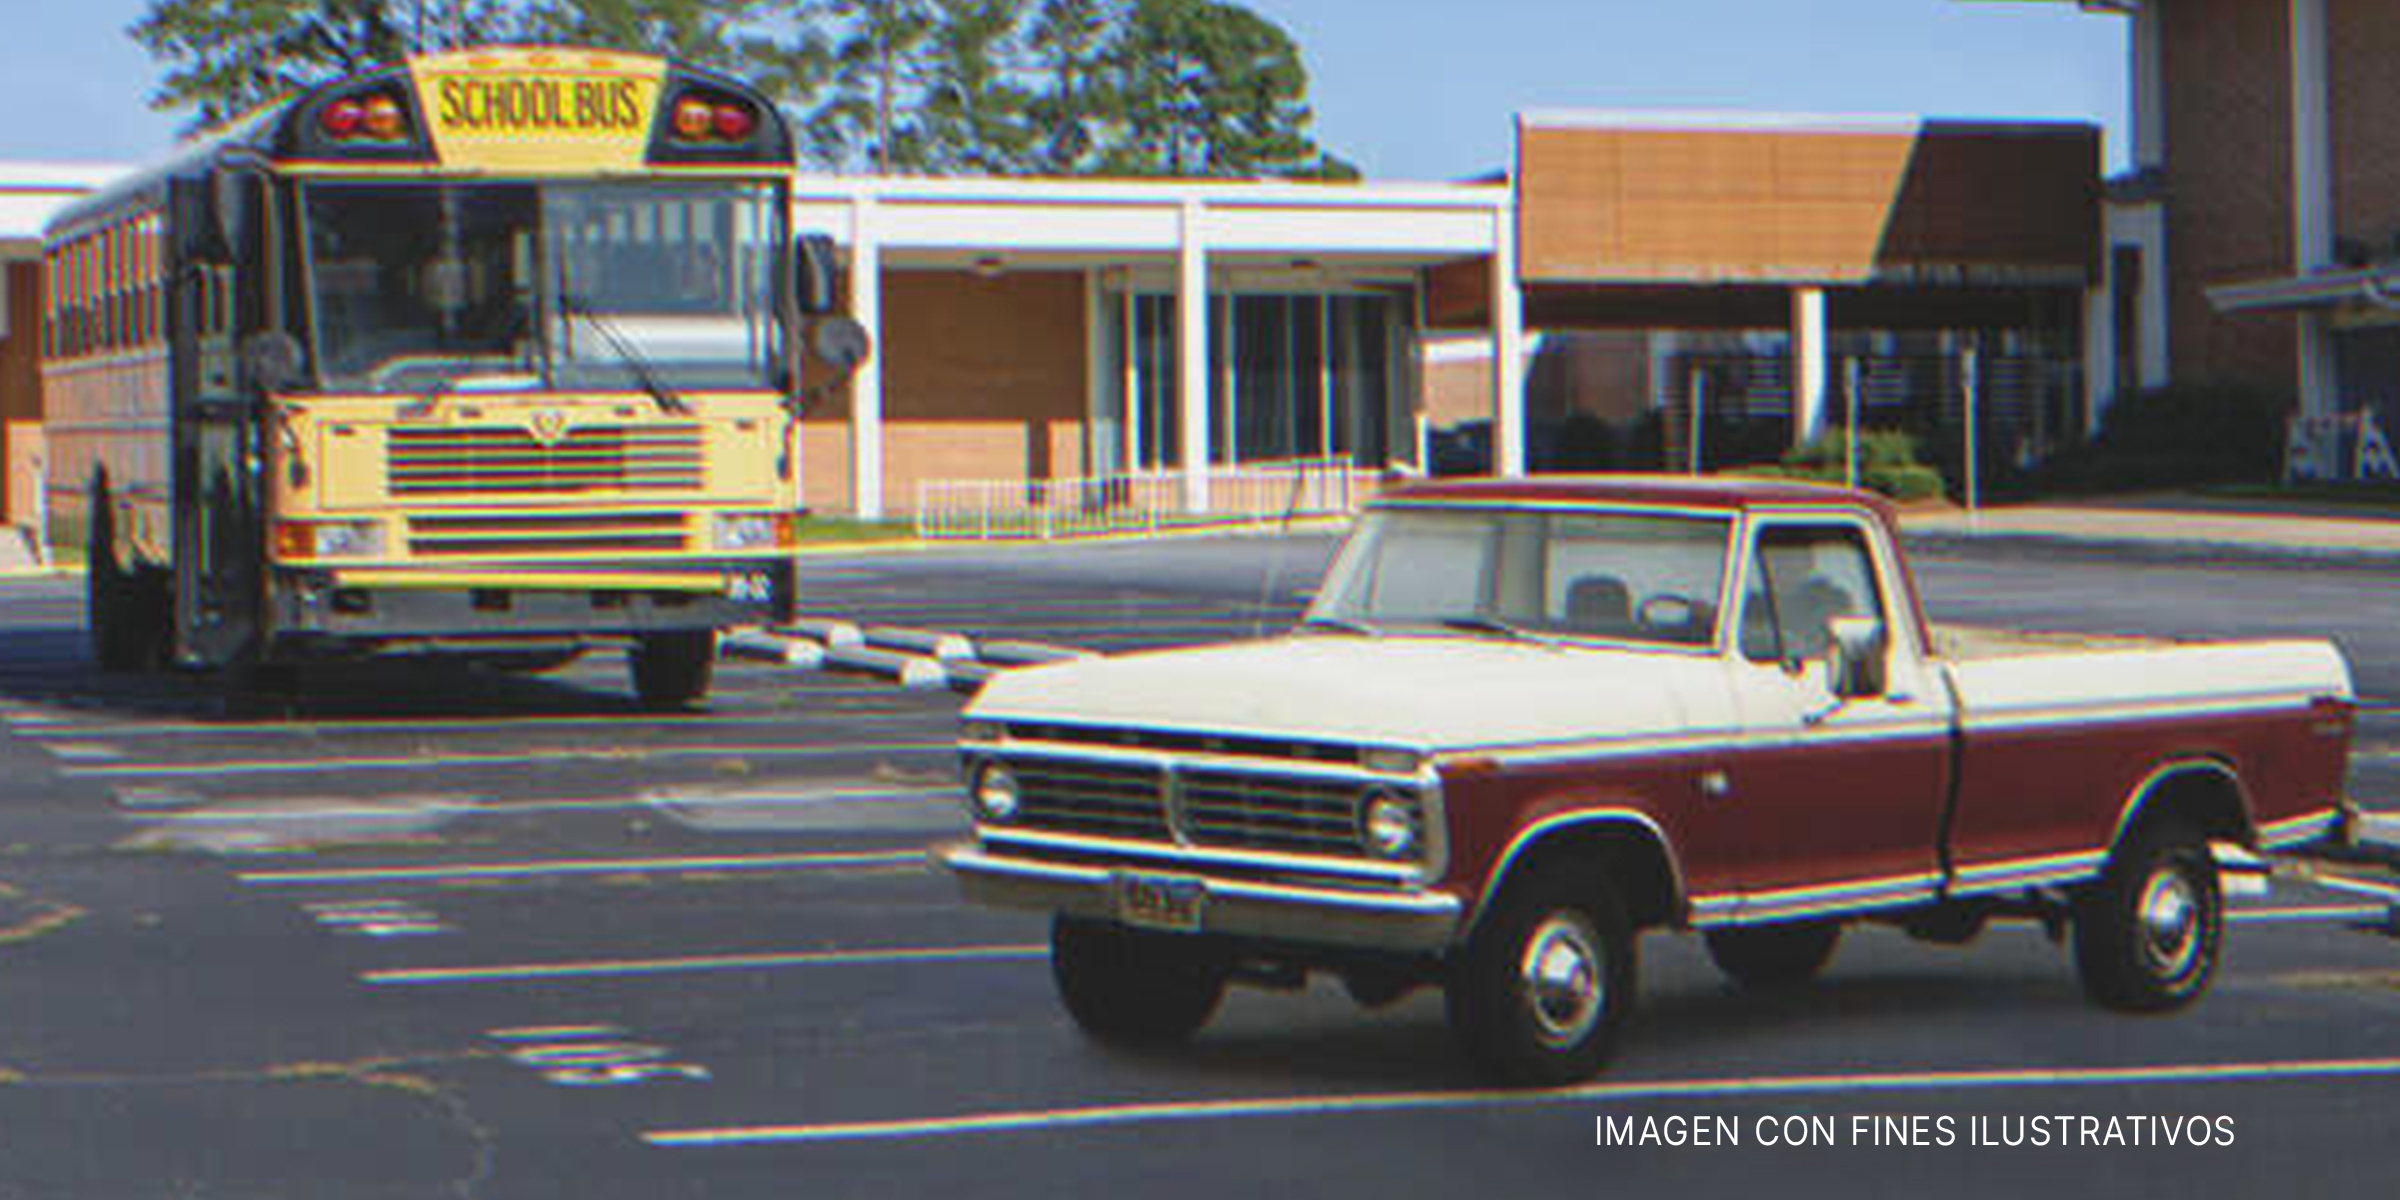 Un autobus escolar y una camioneta | Foto: flickr.com/Alabama Extension (Public Domain) | flickr.com/Crown Star Images (CC BY 2.0)